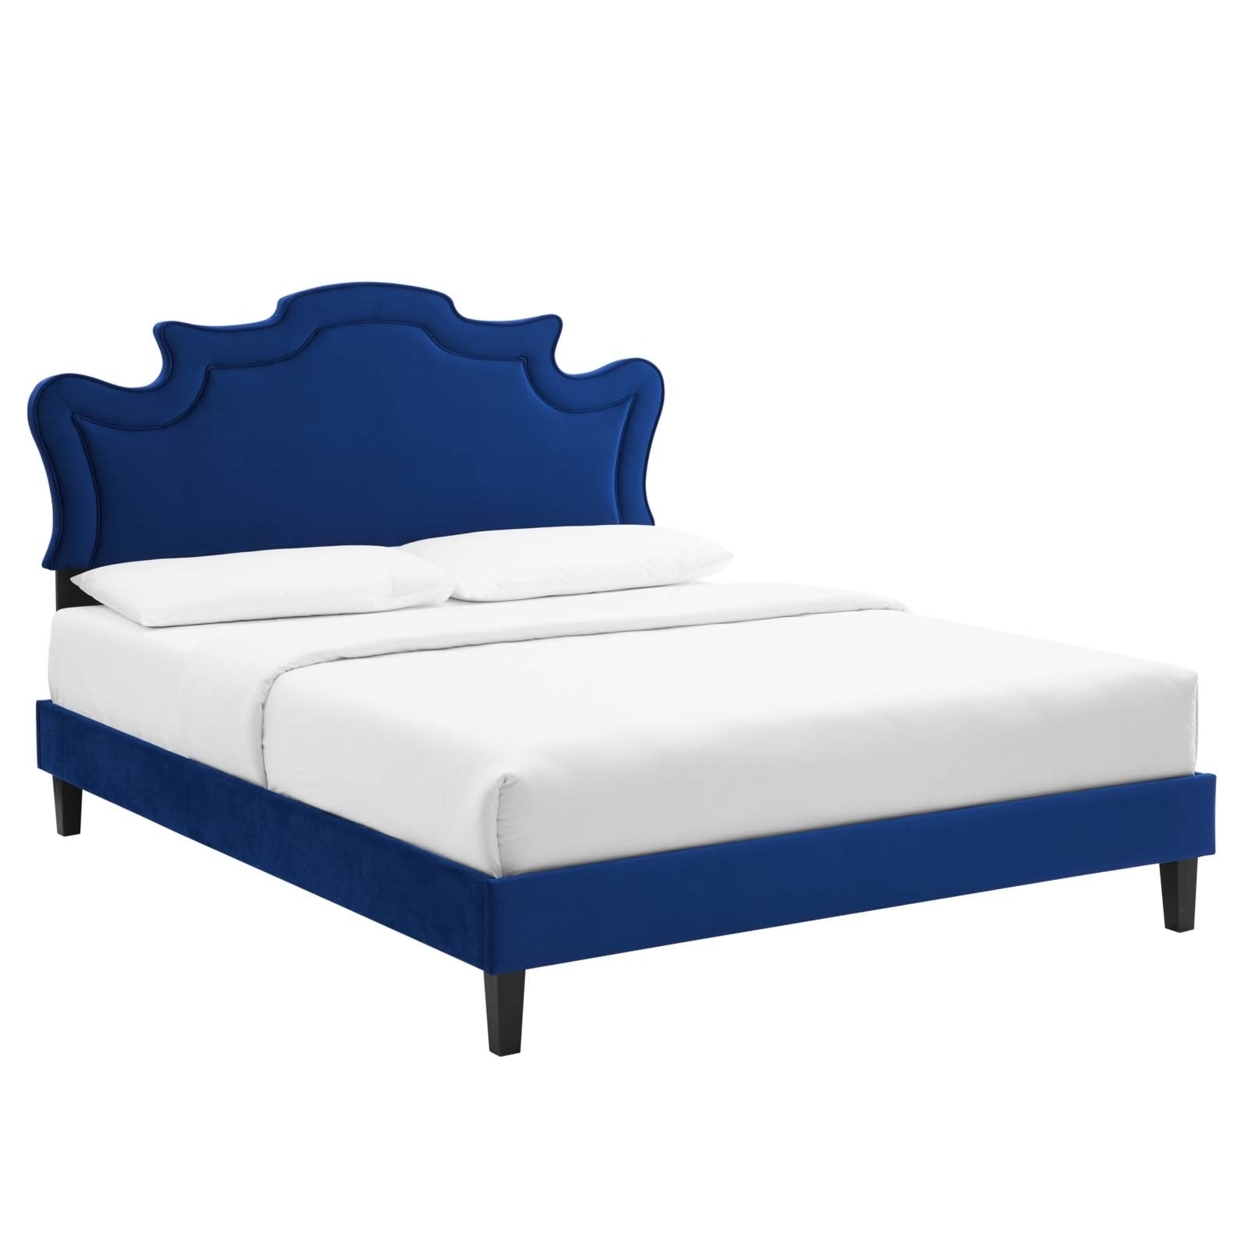 Full Bed, Navy Blue Velvet Scalloped Headboard, Tapered Wood Legs